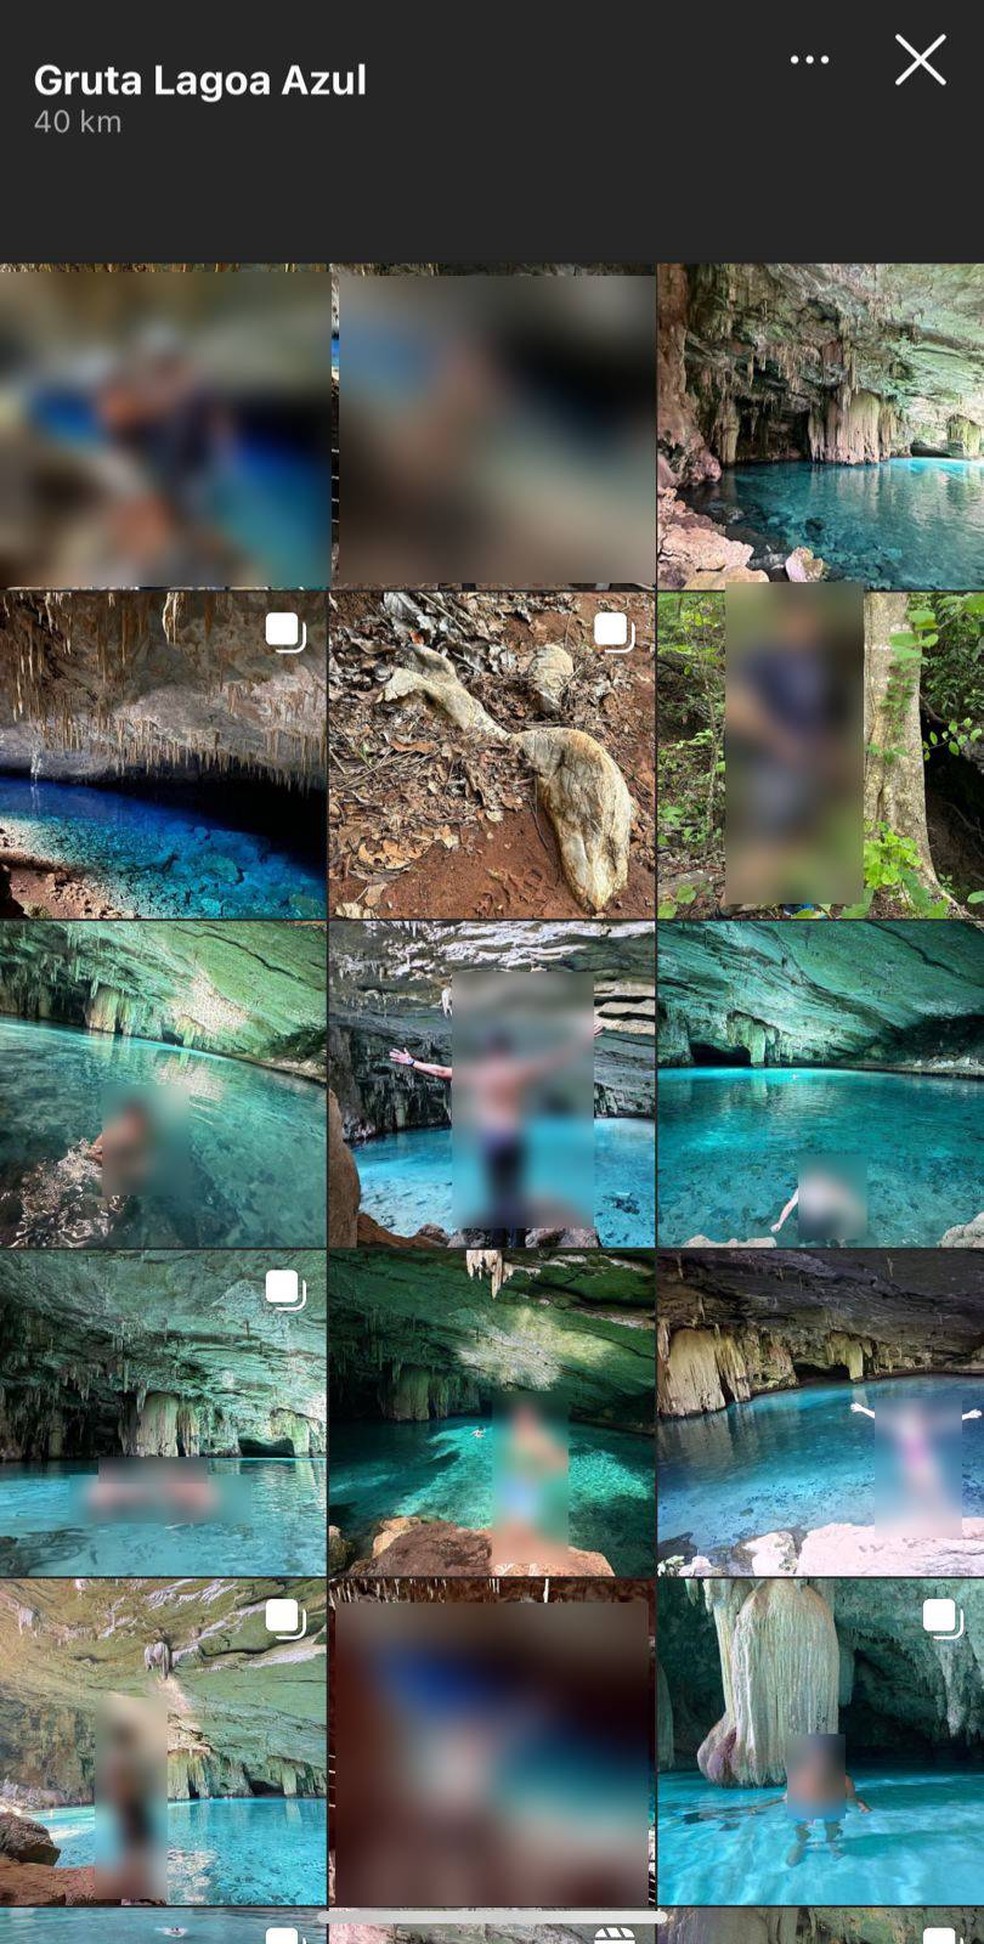 Print da localização da gruta nas redes sociais — Foto: Reprodução